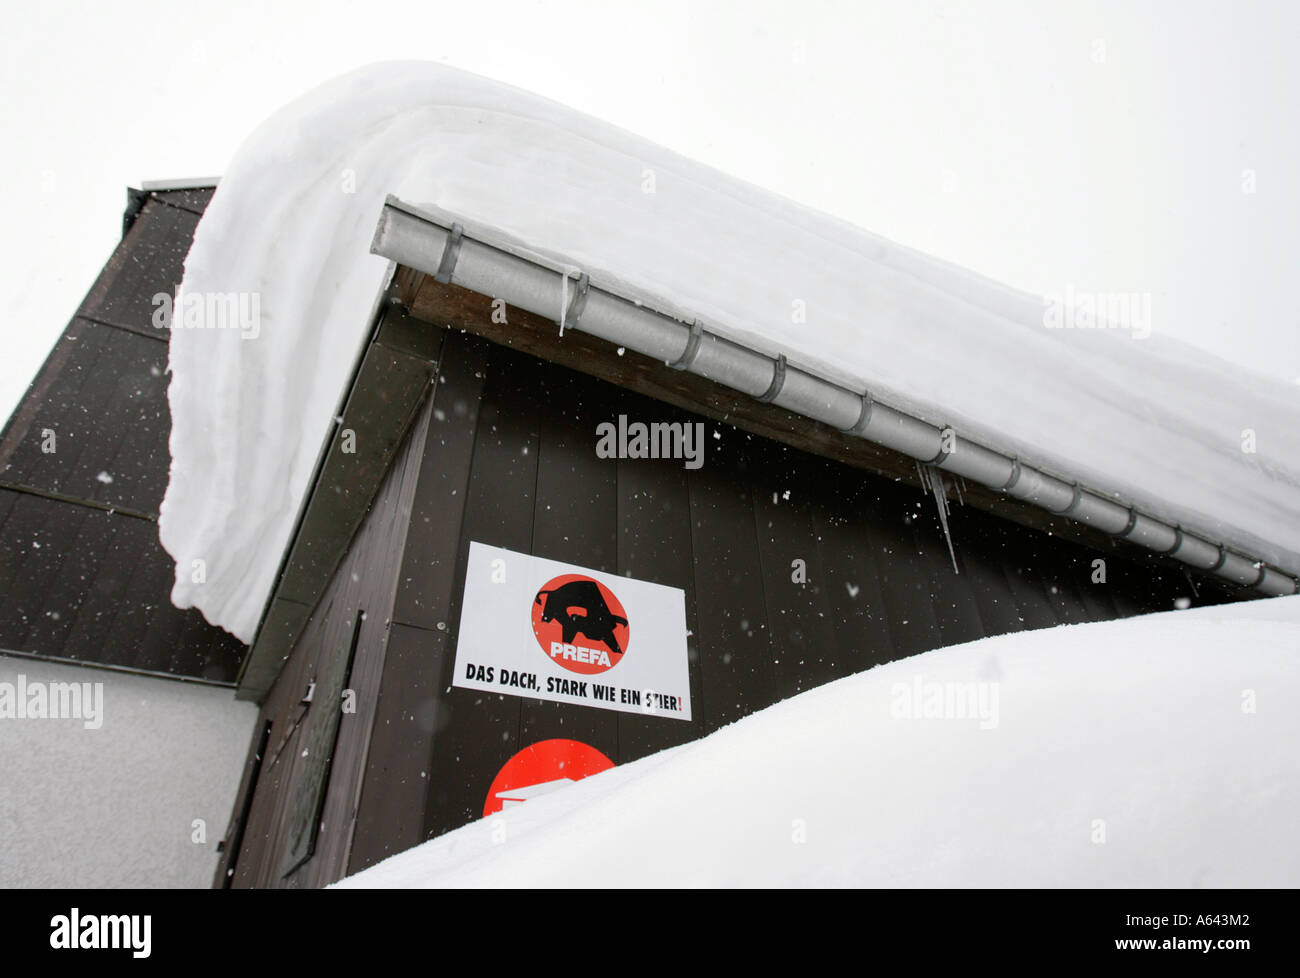 Toit Prefa garantit la sécurité même avec beaucoup d'accumulation de neige sur le toit Banque D'Images